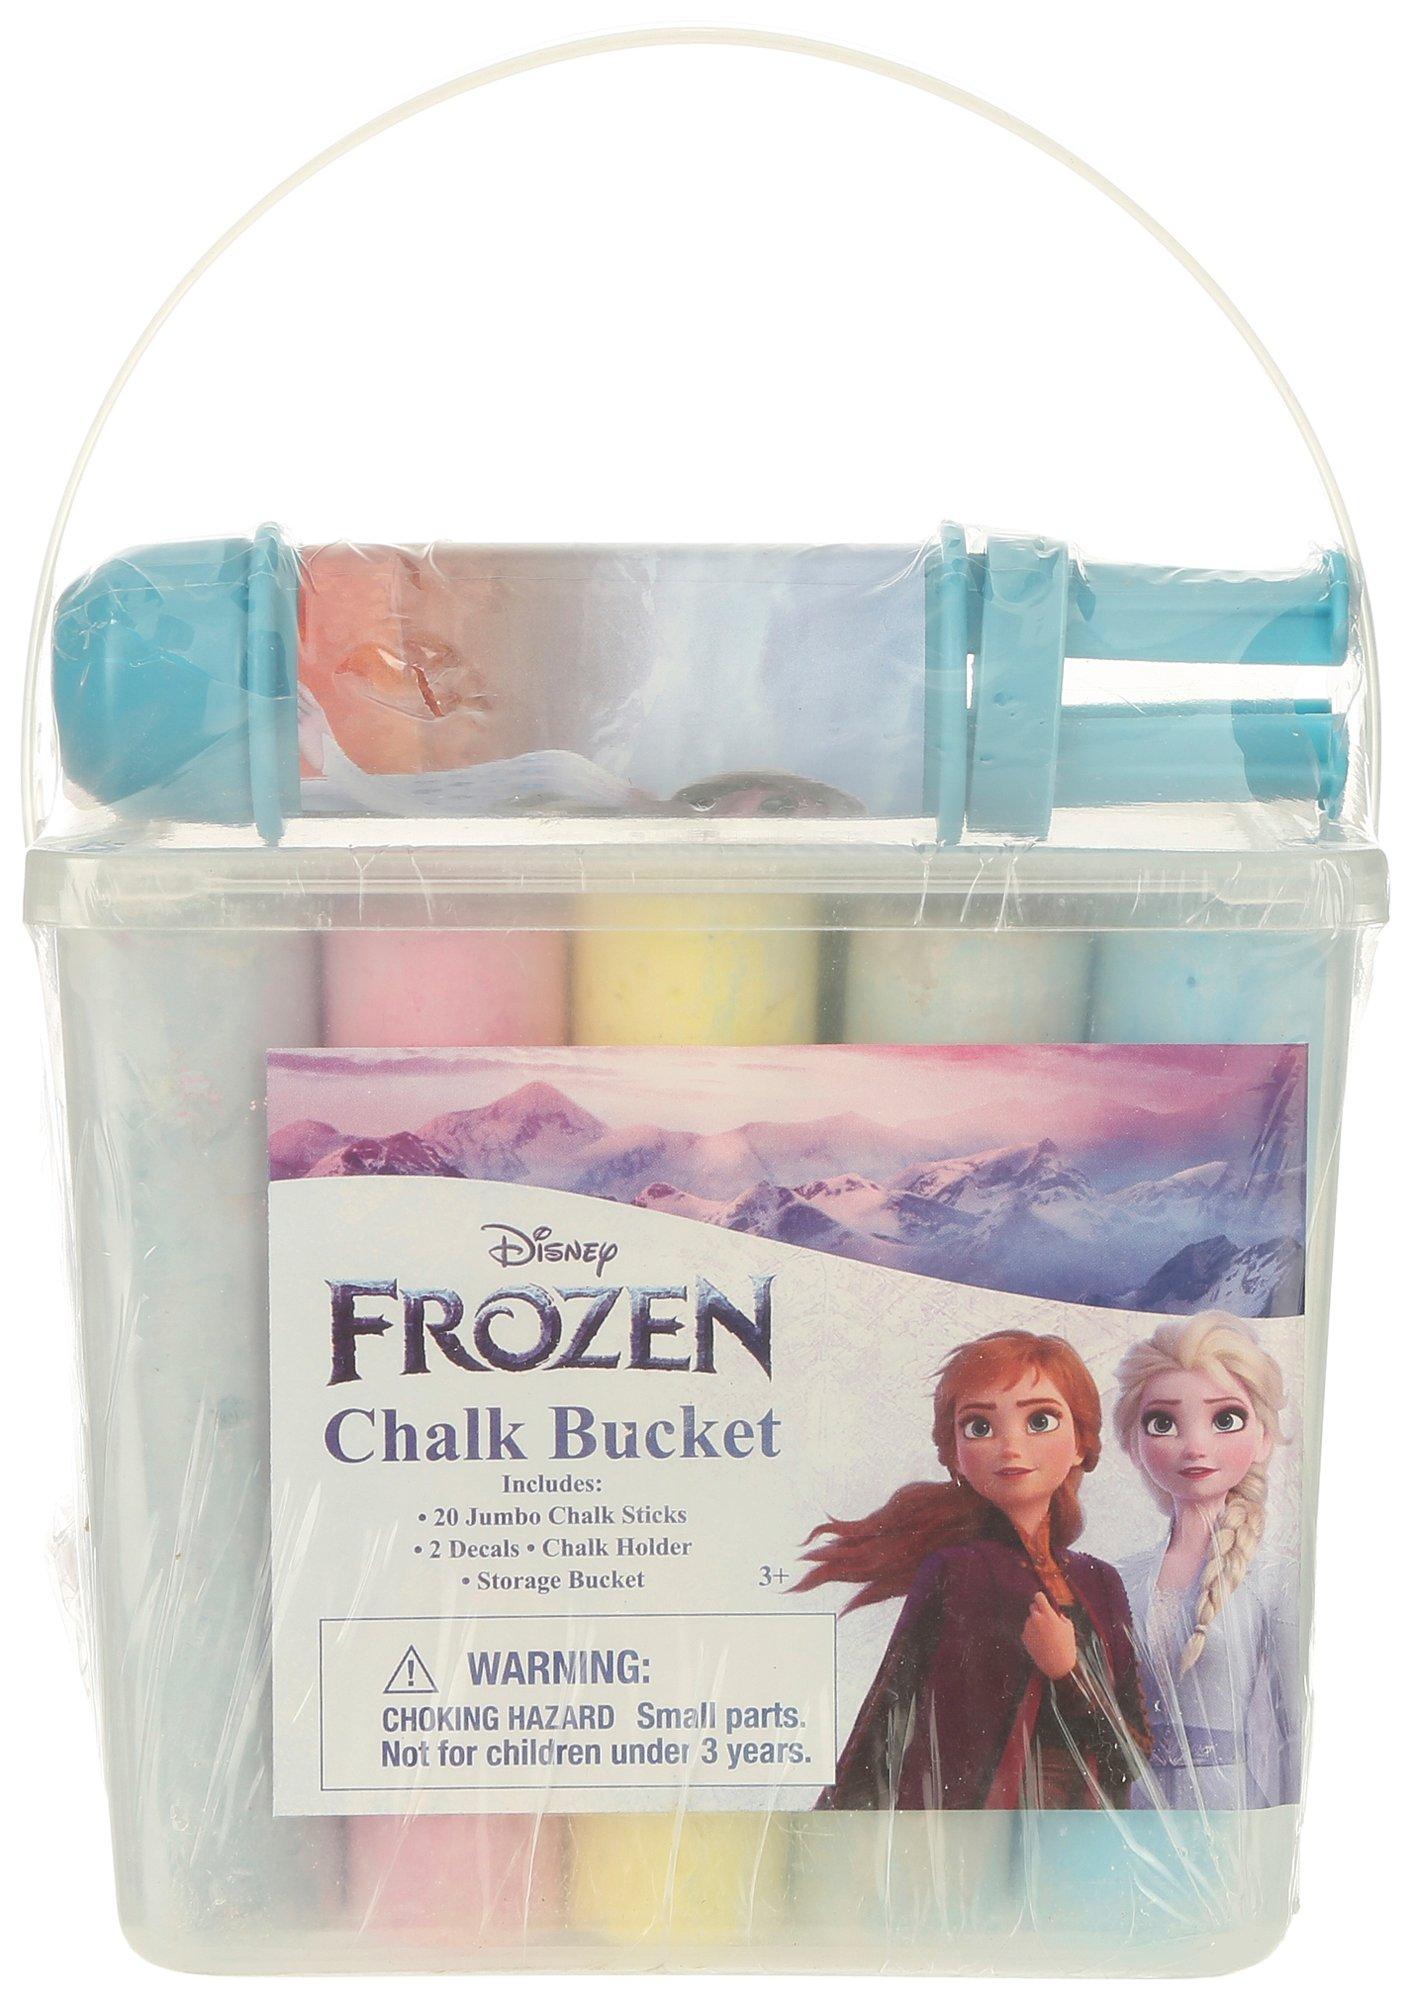 20 pc. Jumbo Chalk Sticks + 2 Decals Disney Frozen Chalk